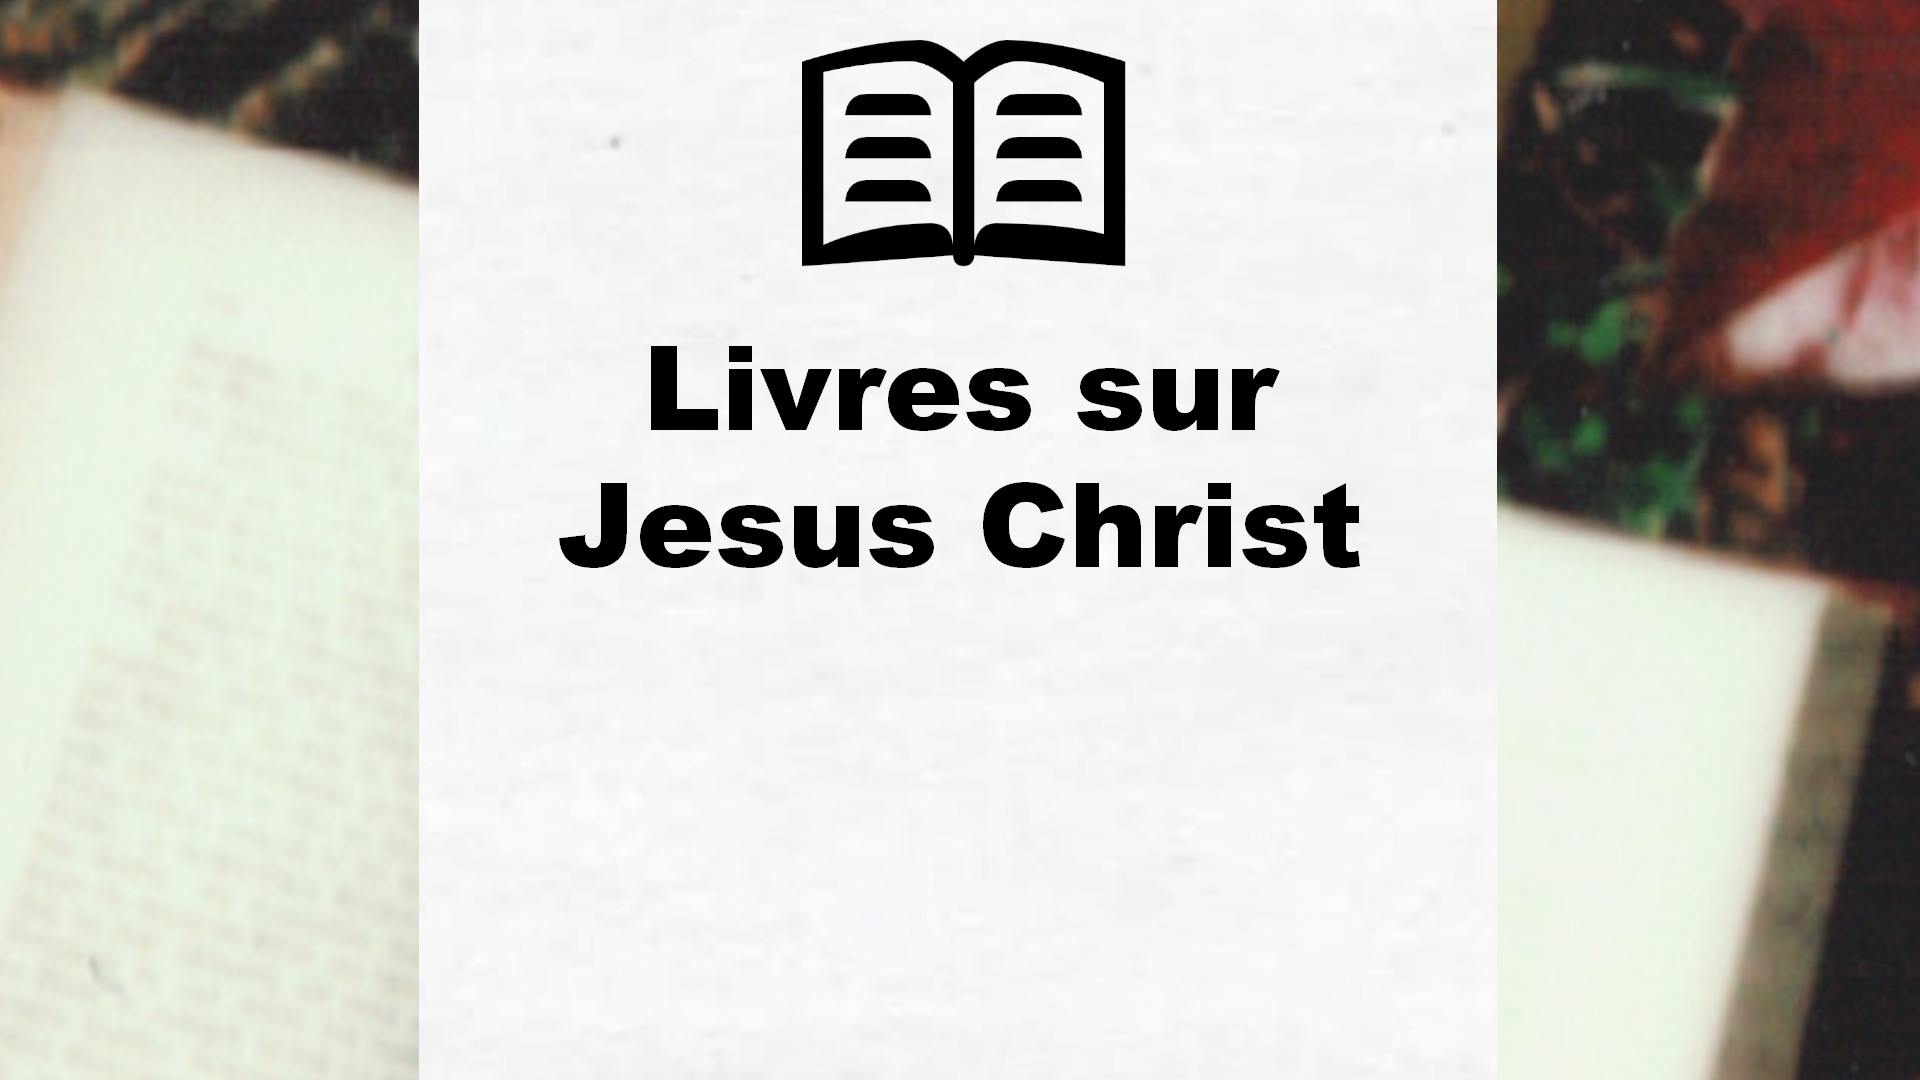 Livres sur Jesus Christ